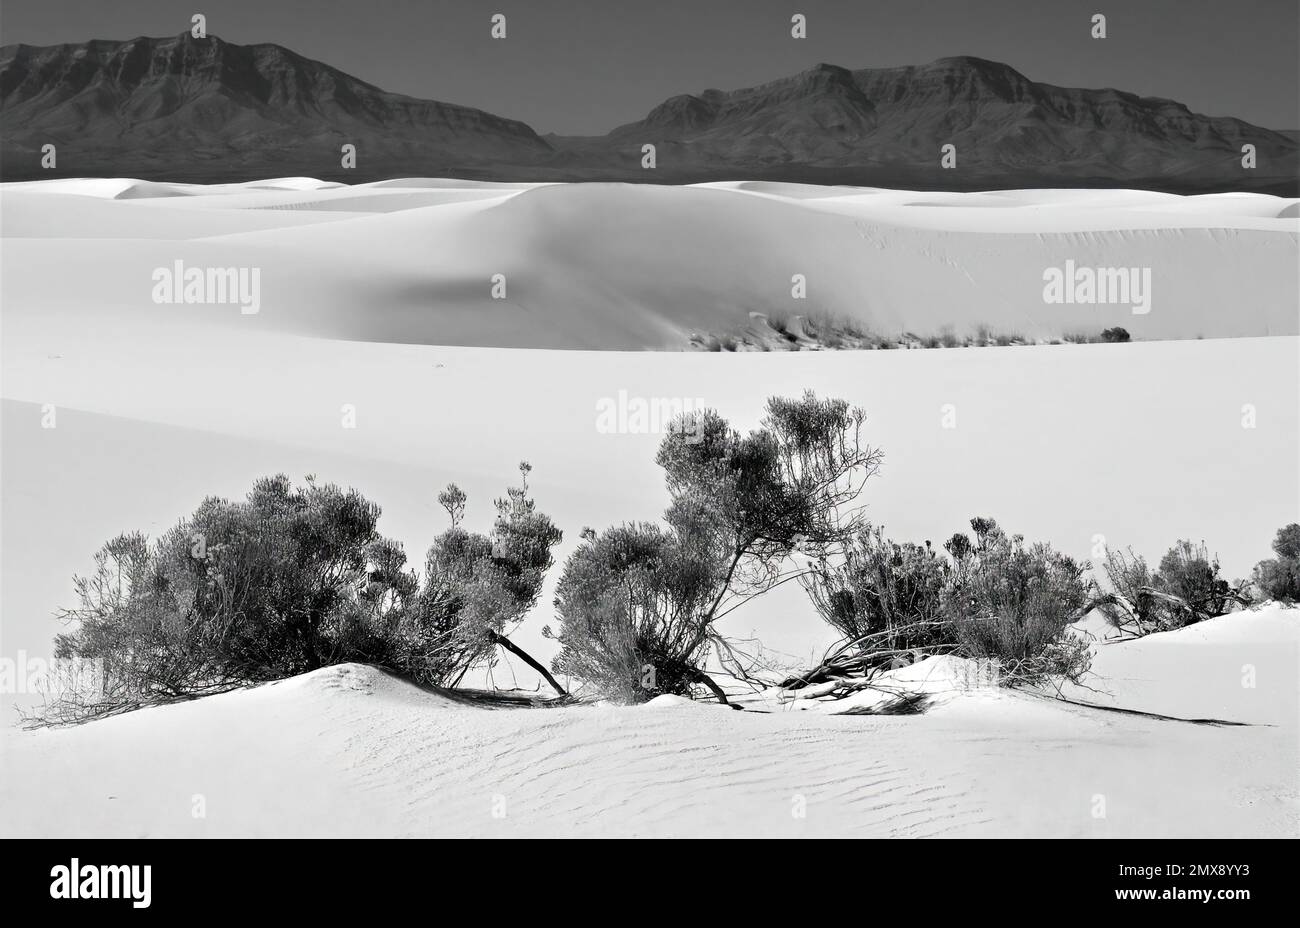 Dunes blanches et flore tranquilles en monochrome Banque D'Images